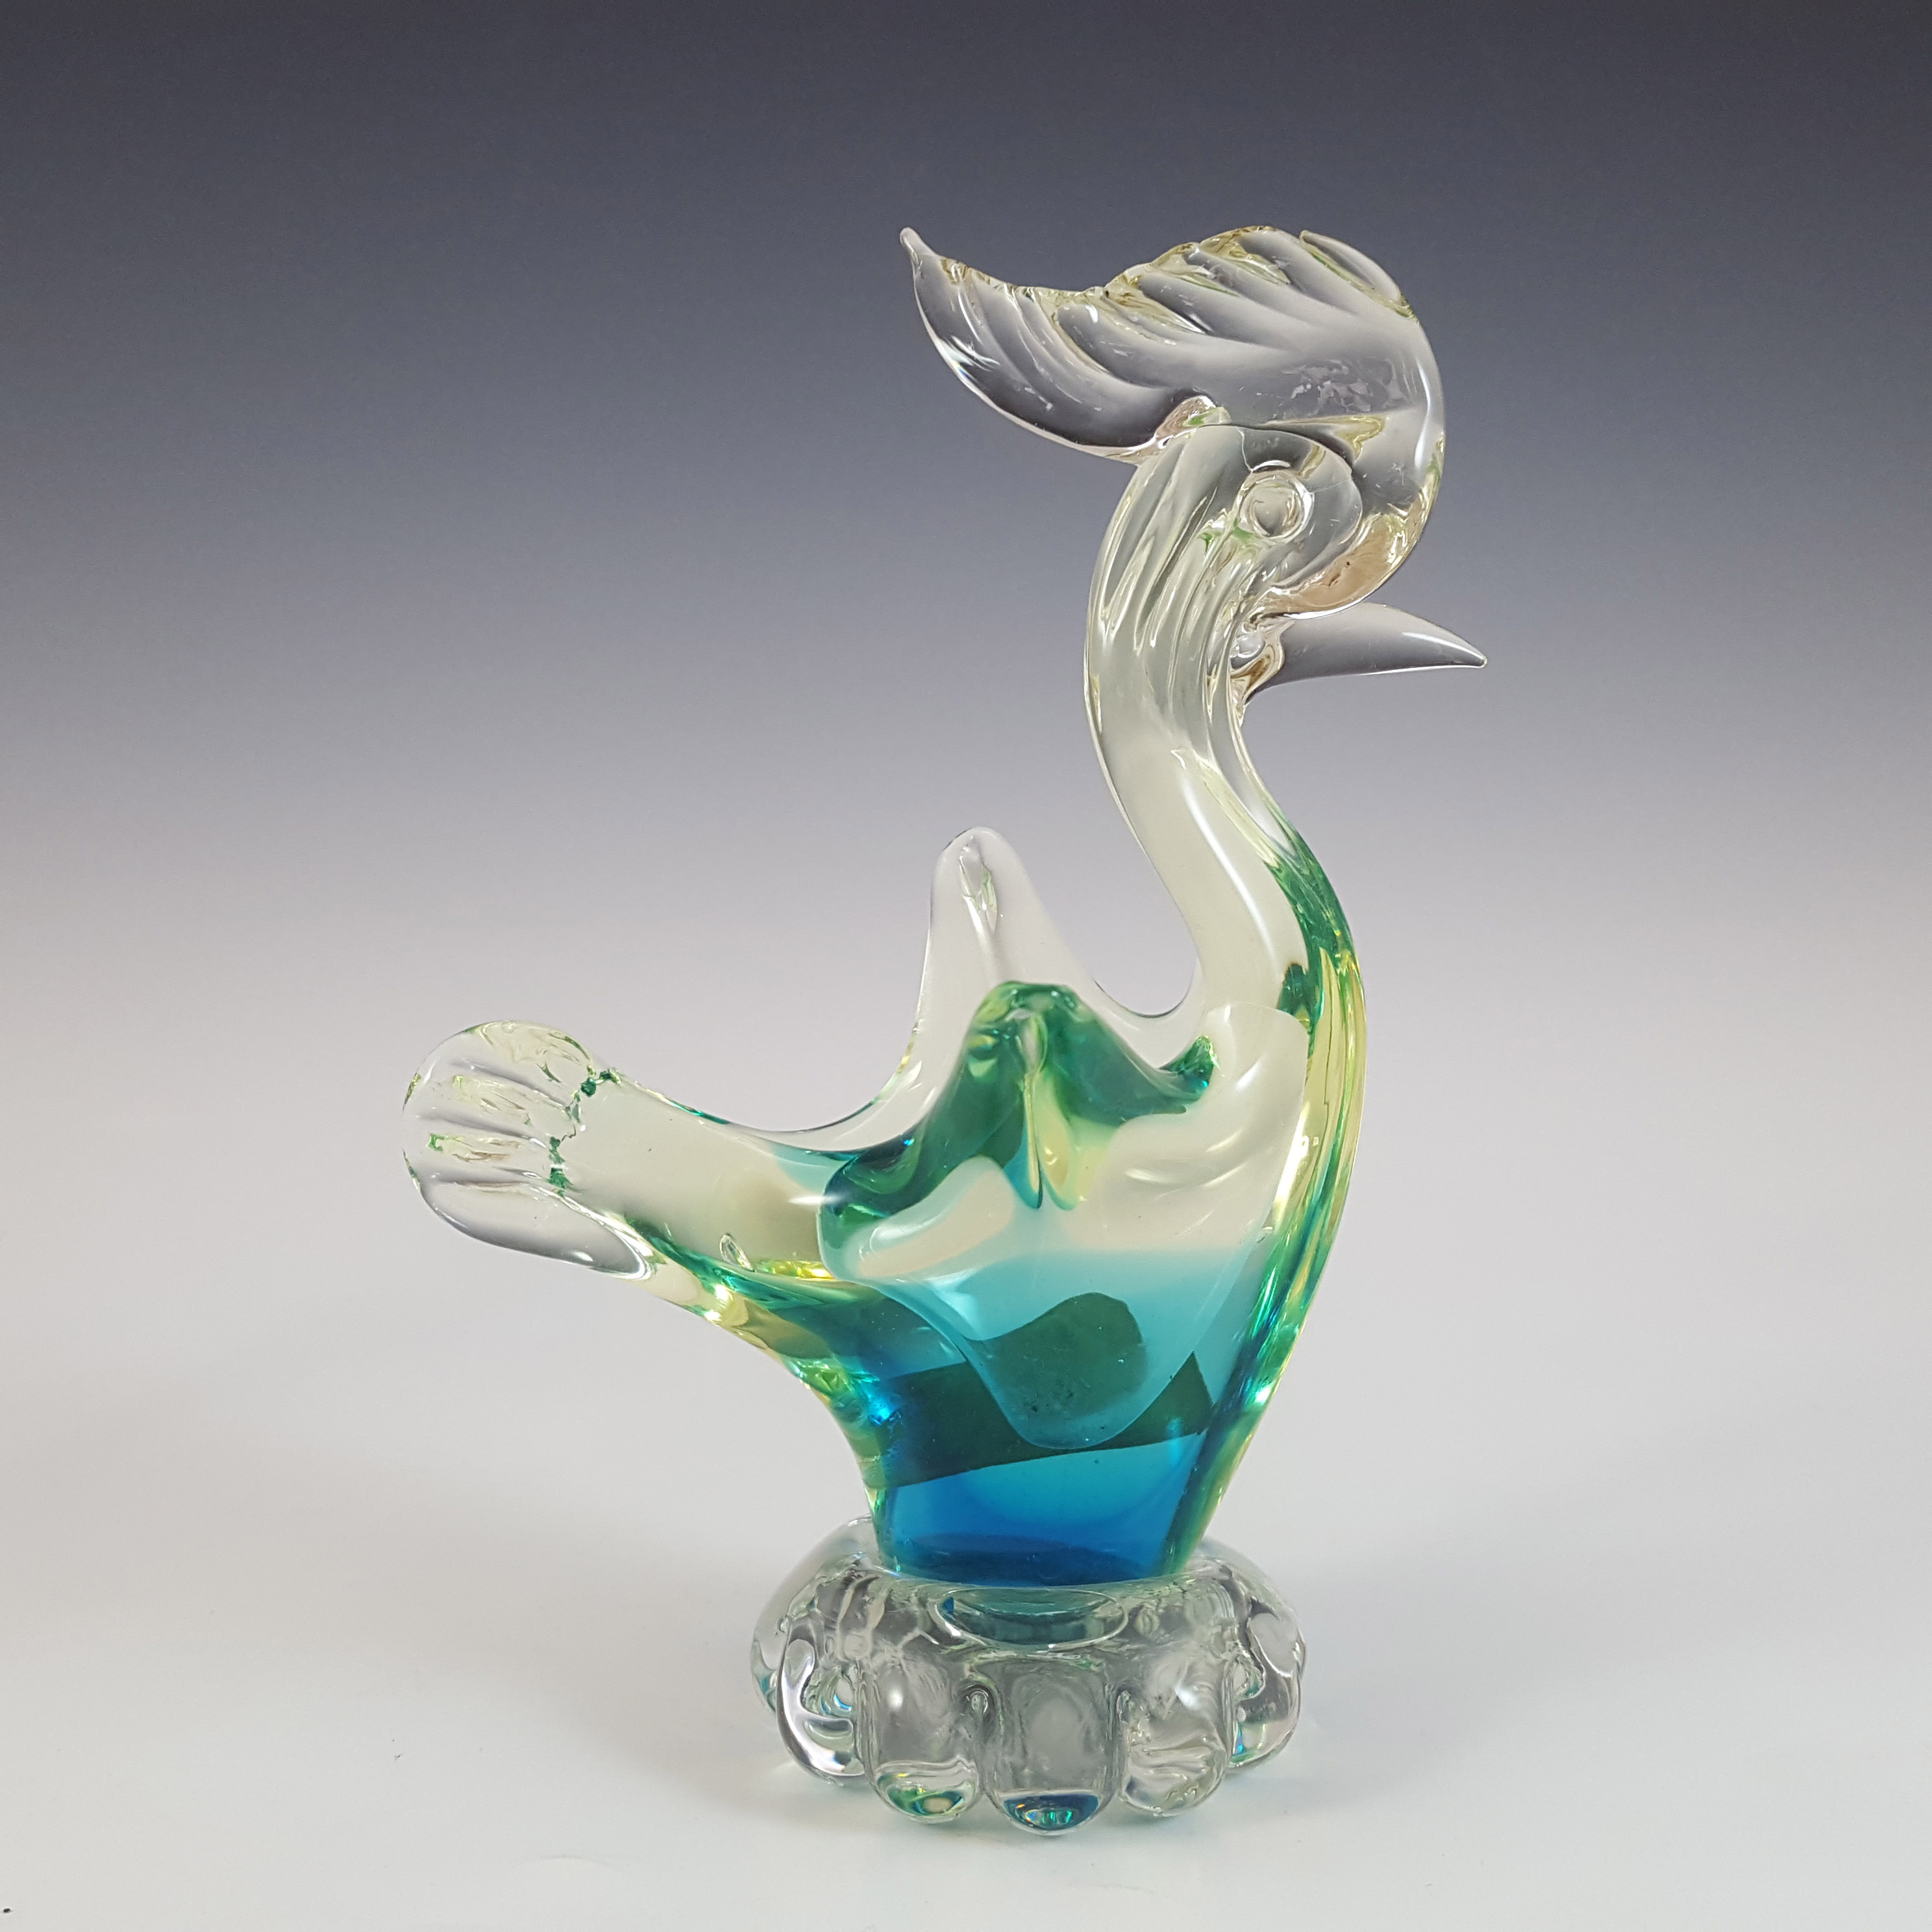 (image for) Vetro Artistico Veneziano Murano Uranium Sommerso Glass Swan - Click Image to Close